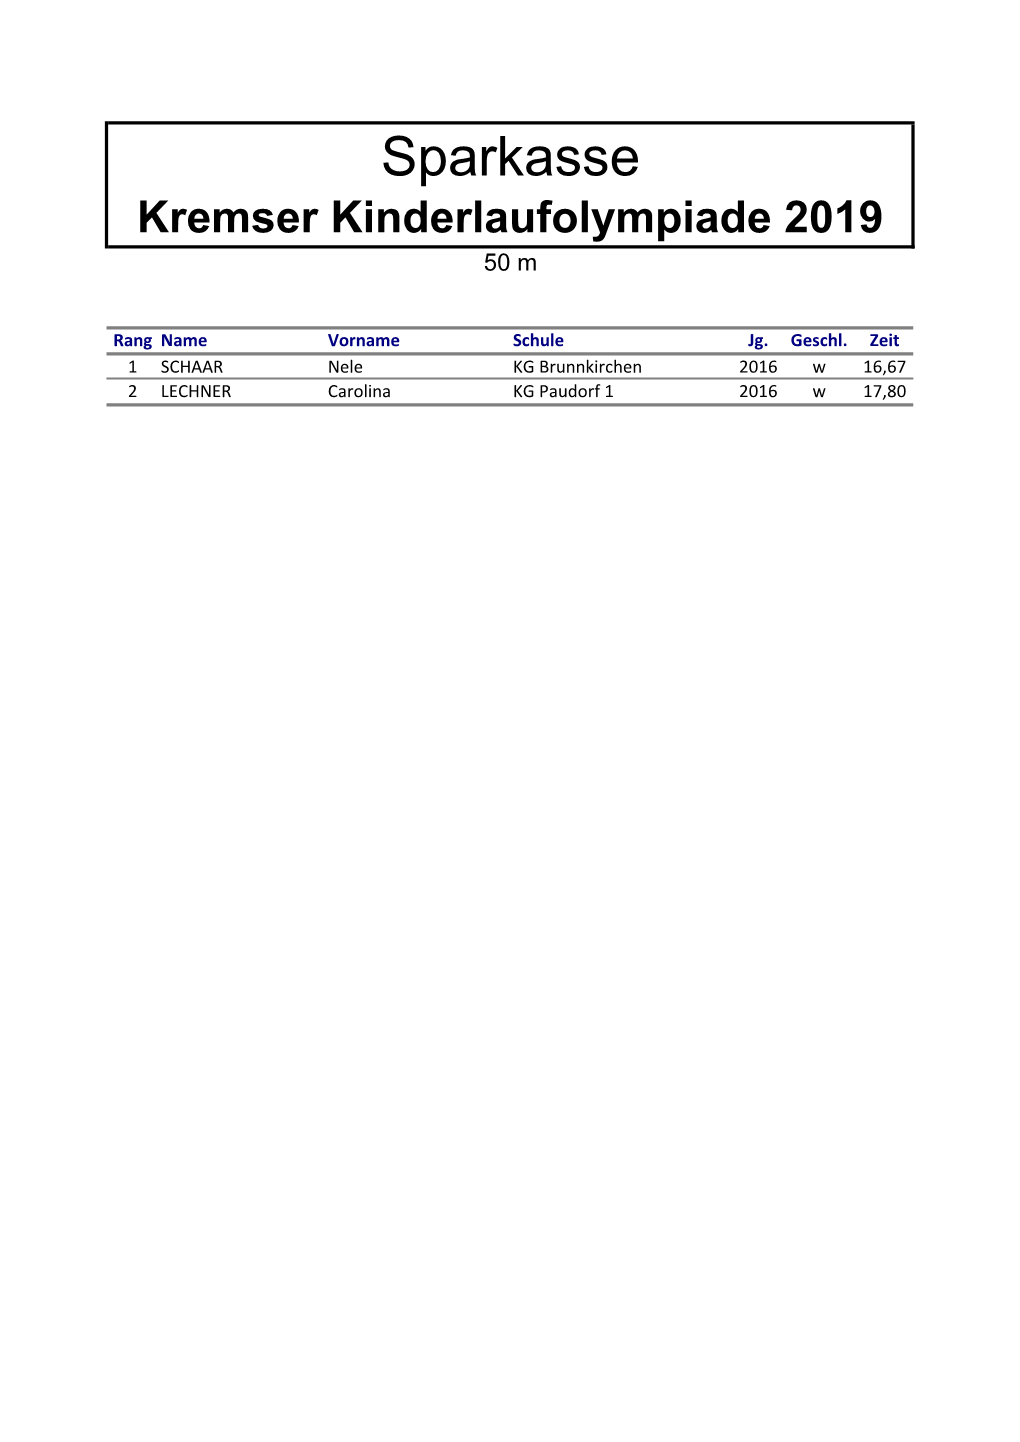 Sparkasse Kremser Kinderlaufolympiade 2019 50 M